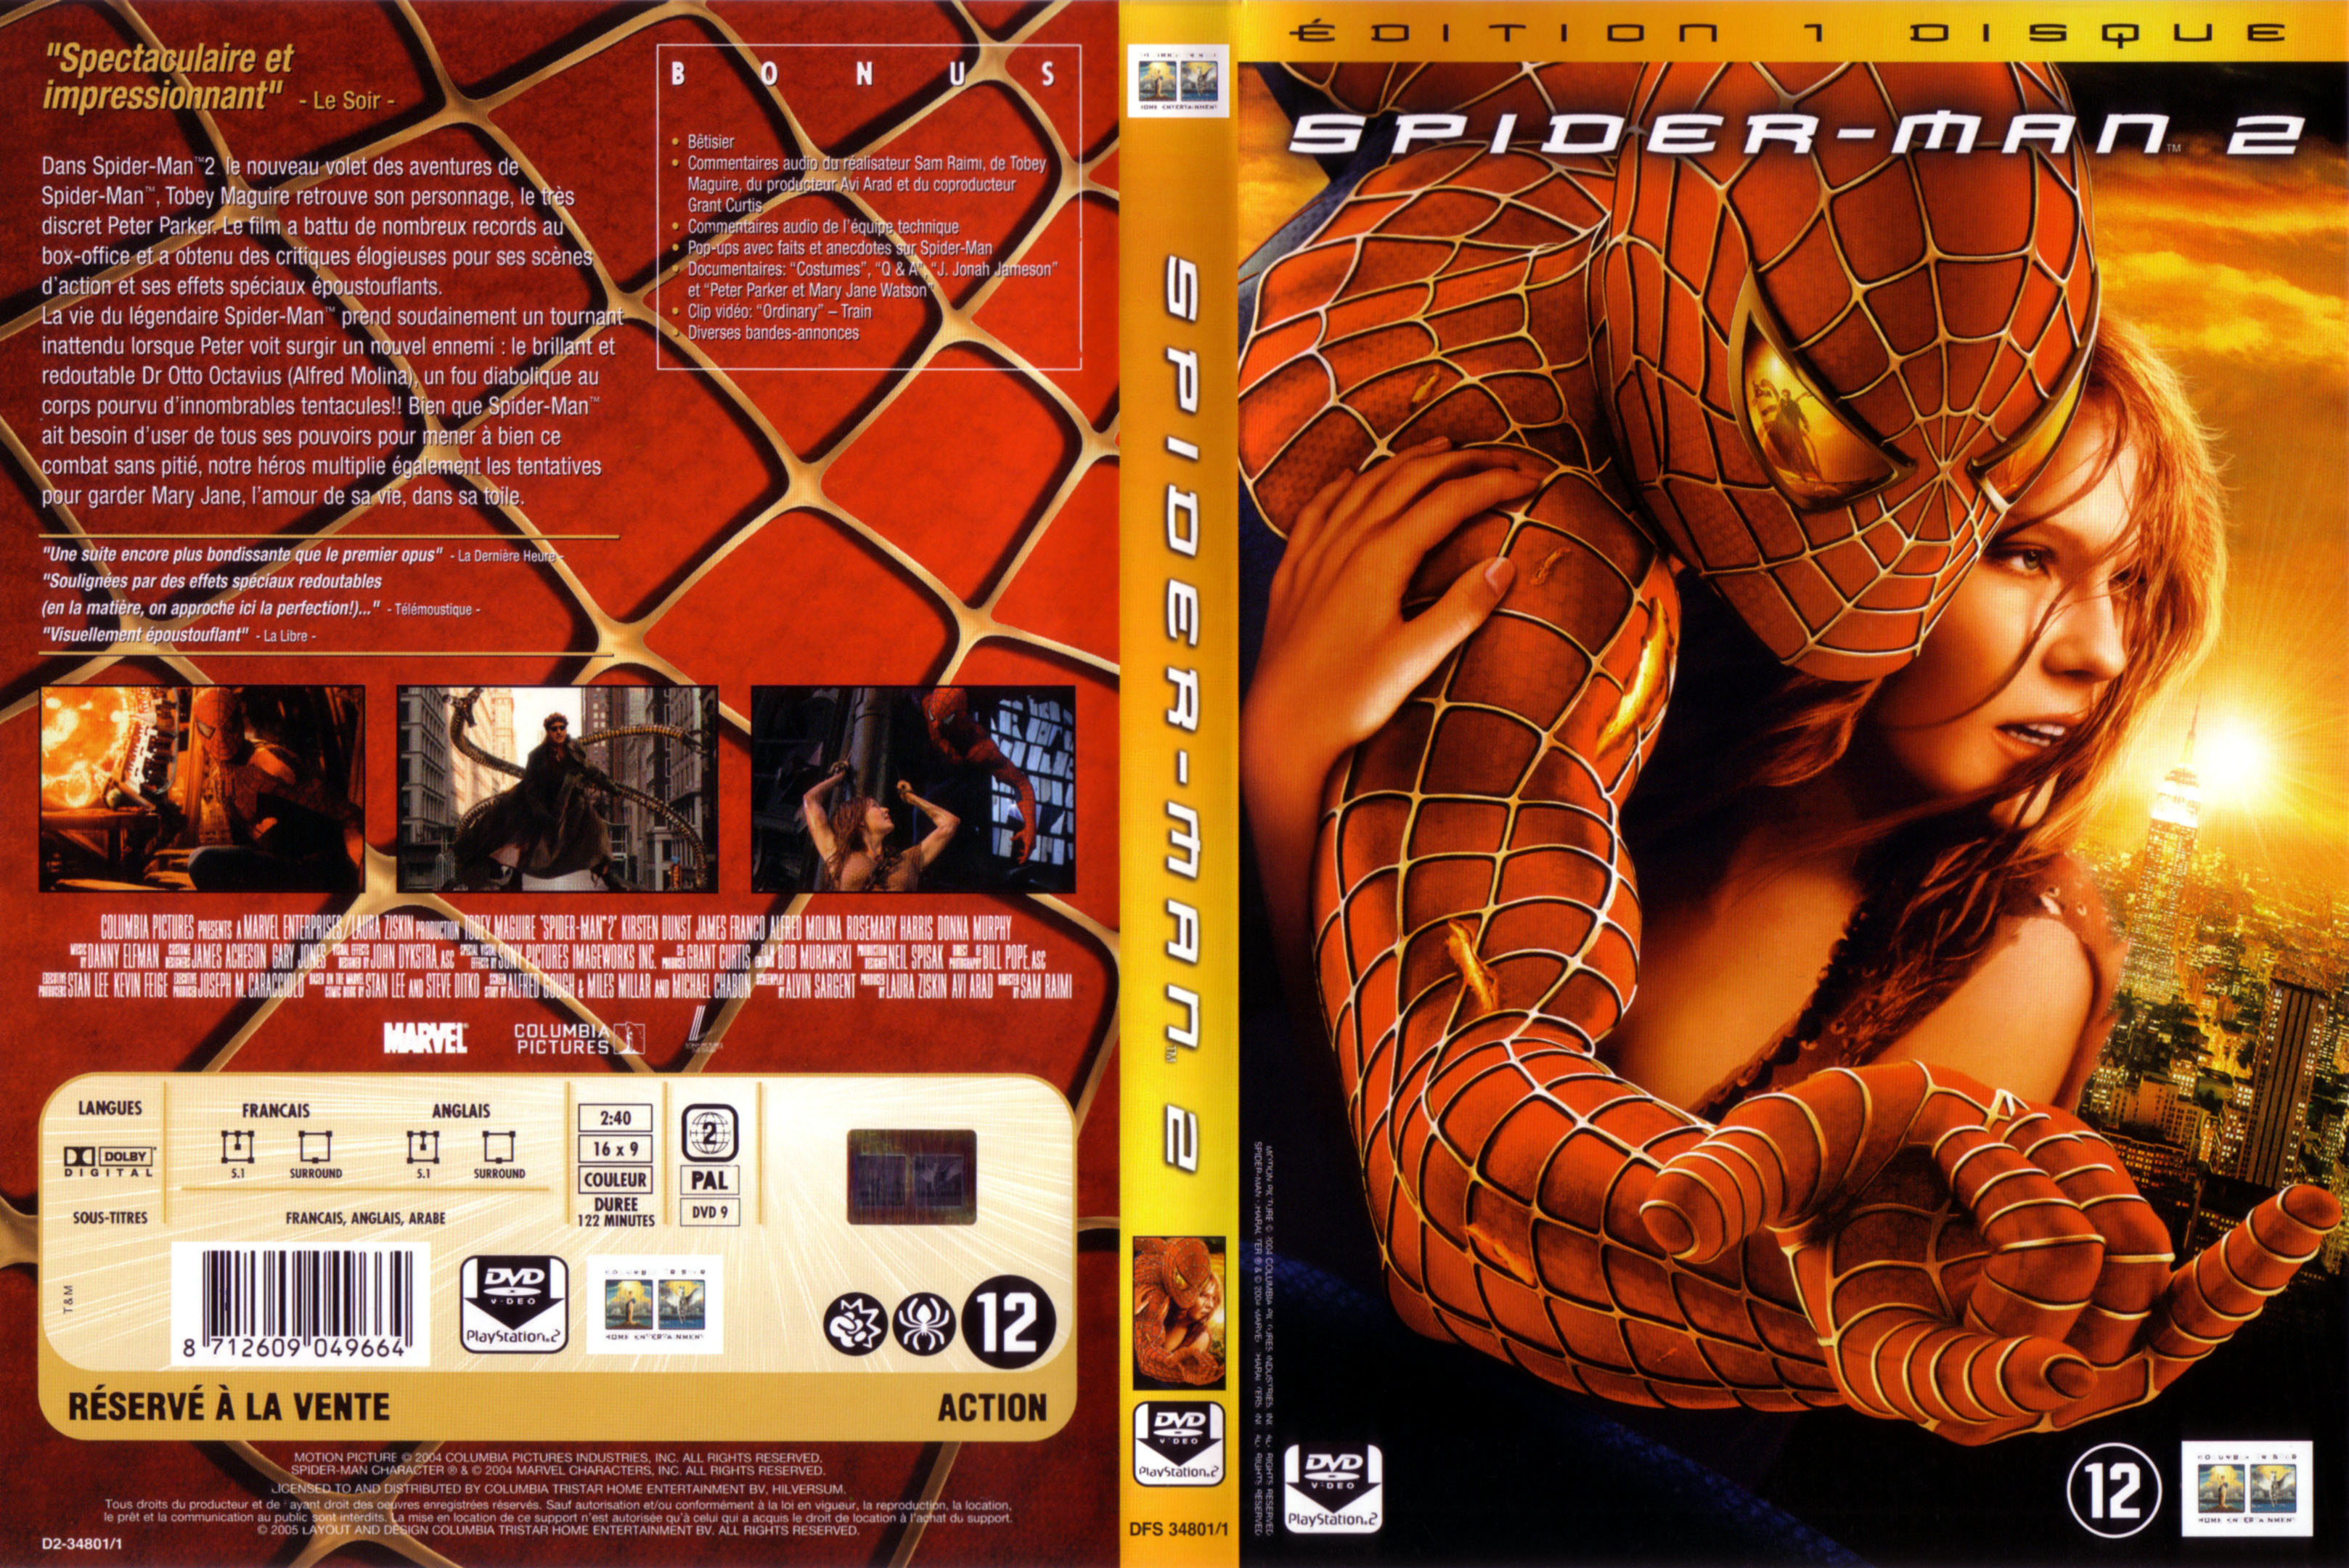 Jaquette DVD Spiderman 2 v5